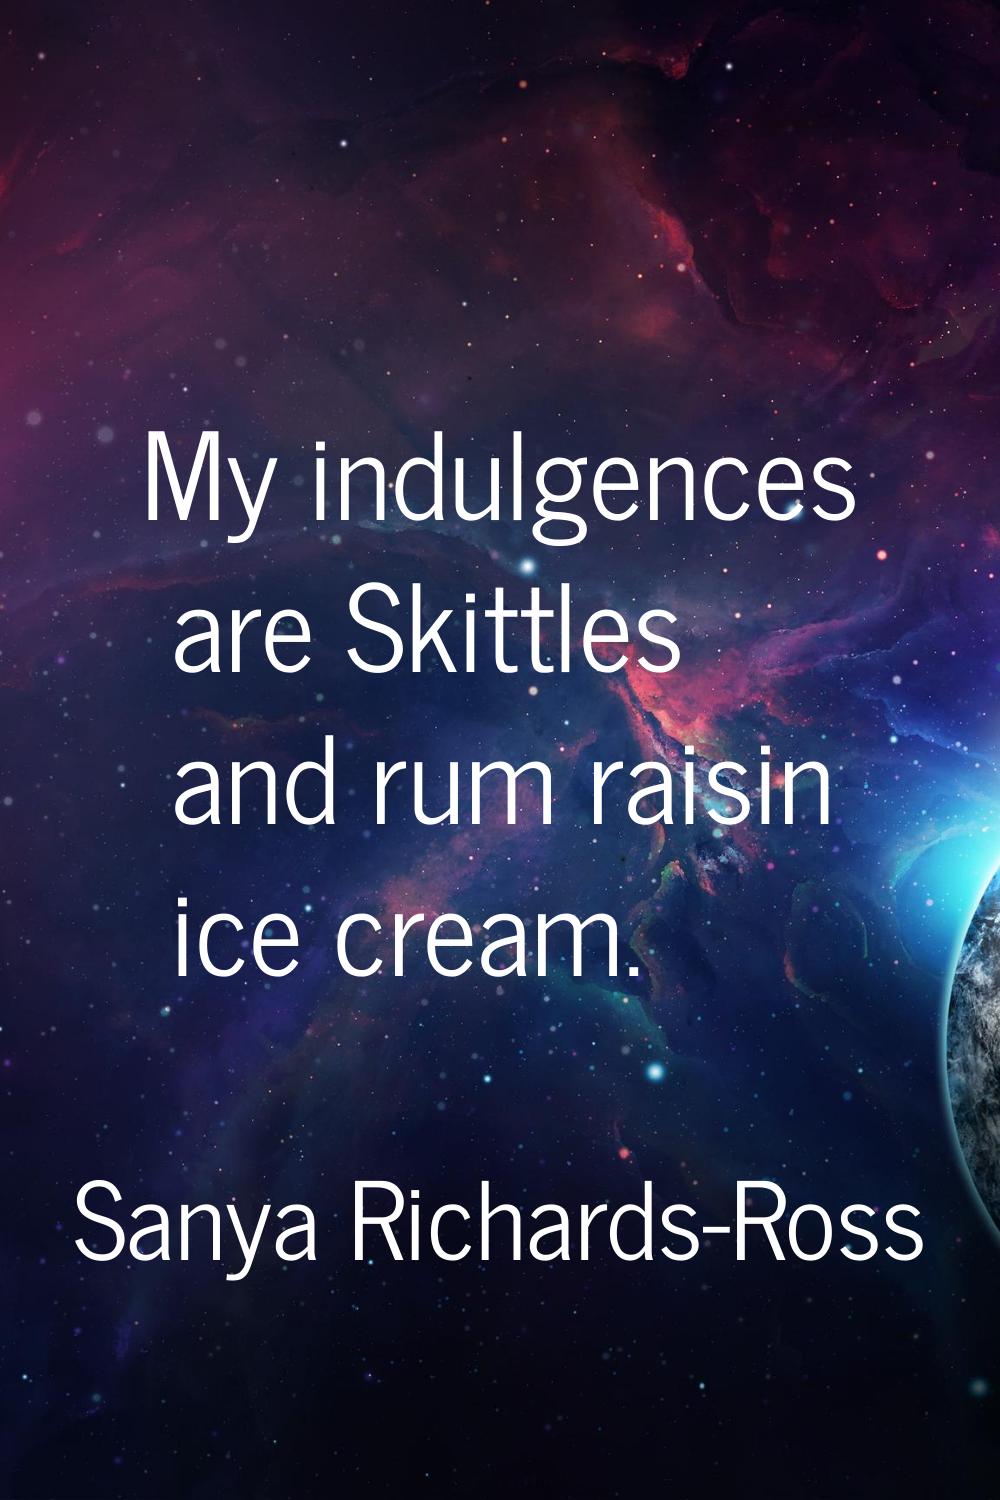 My indulgences are Skittles and rum raisin ice cream.